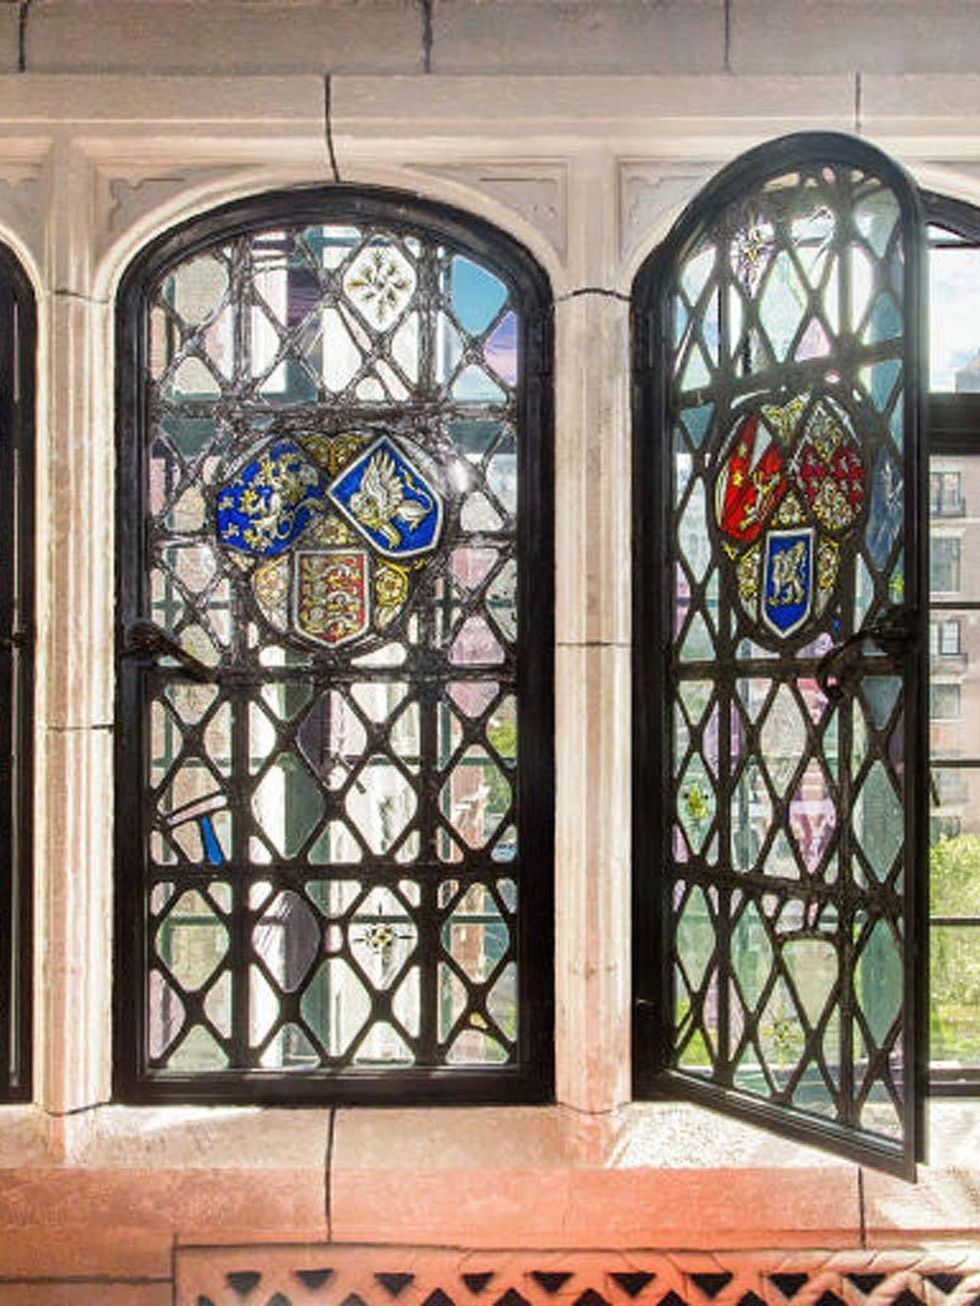 <p>El apartamento está decorado en un elaborado estilo Tudor con detalles propios del gótico, asi como los marcos de las ventanas, arcos de piedra caliza, paneles de ladrillo y terracota, además de una atmósfera &quot;Downton Abbey&quot;, según <a href="http://www.6sqft.com/gramercy-tudor-castle-co-op-now-twice-the-size-is-back-on-the-market-at-6-25m/" title="Vidrieras" target="_blank">6sqft. </a></p><p>&nbsp;</p>